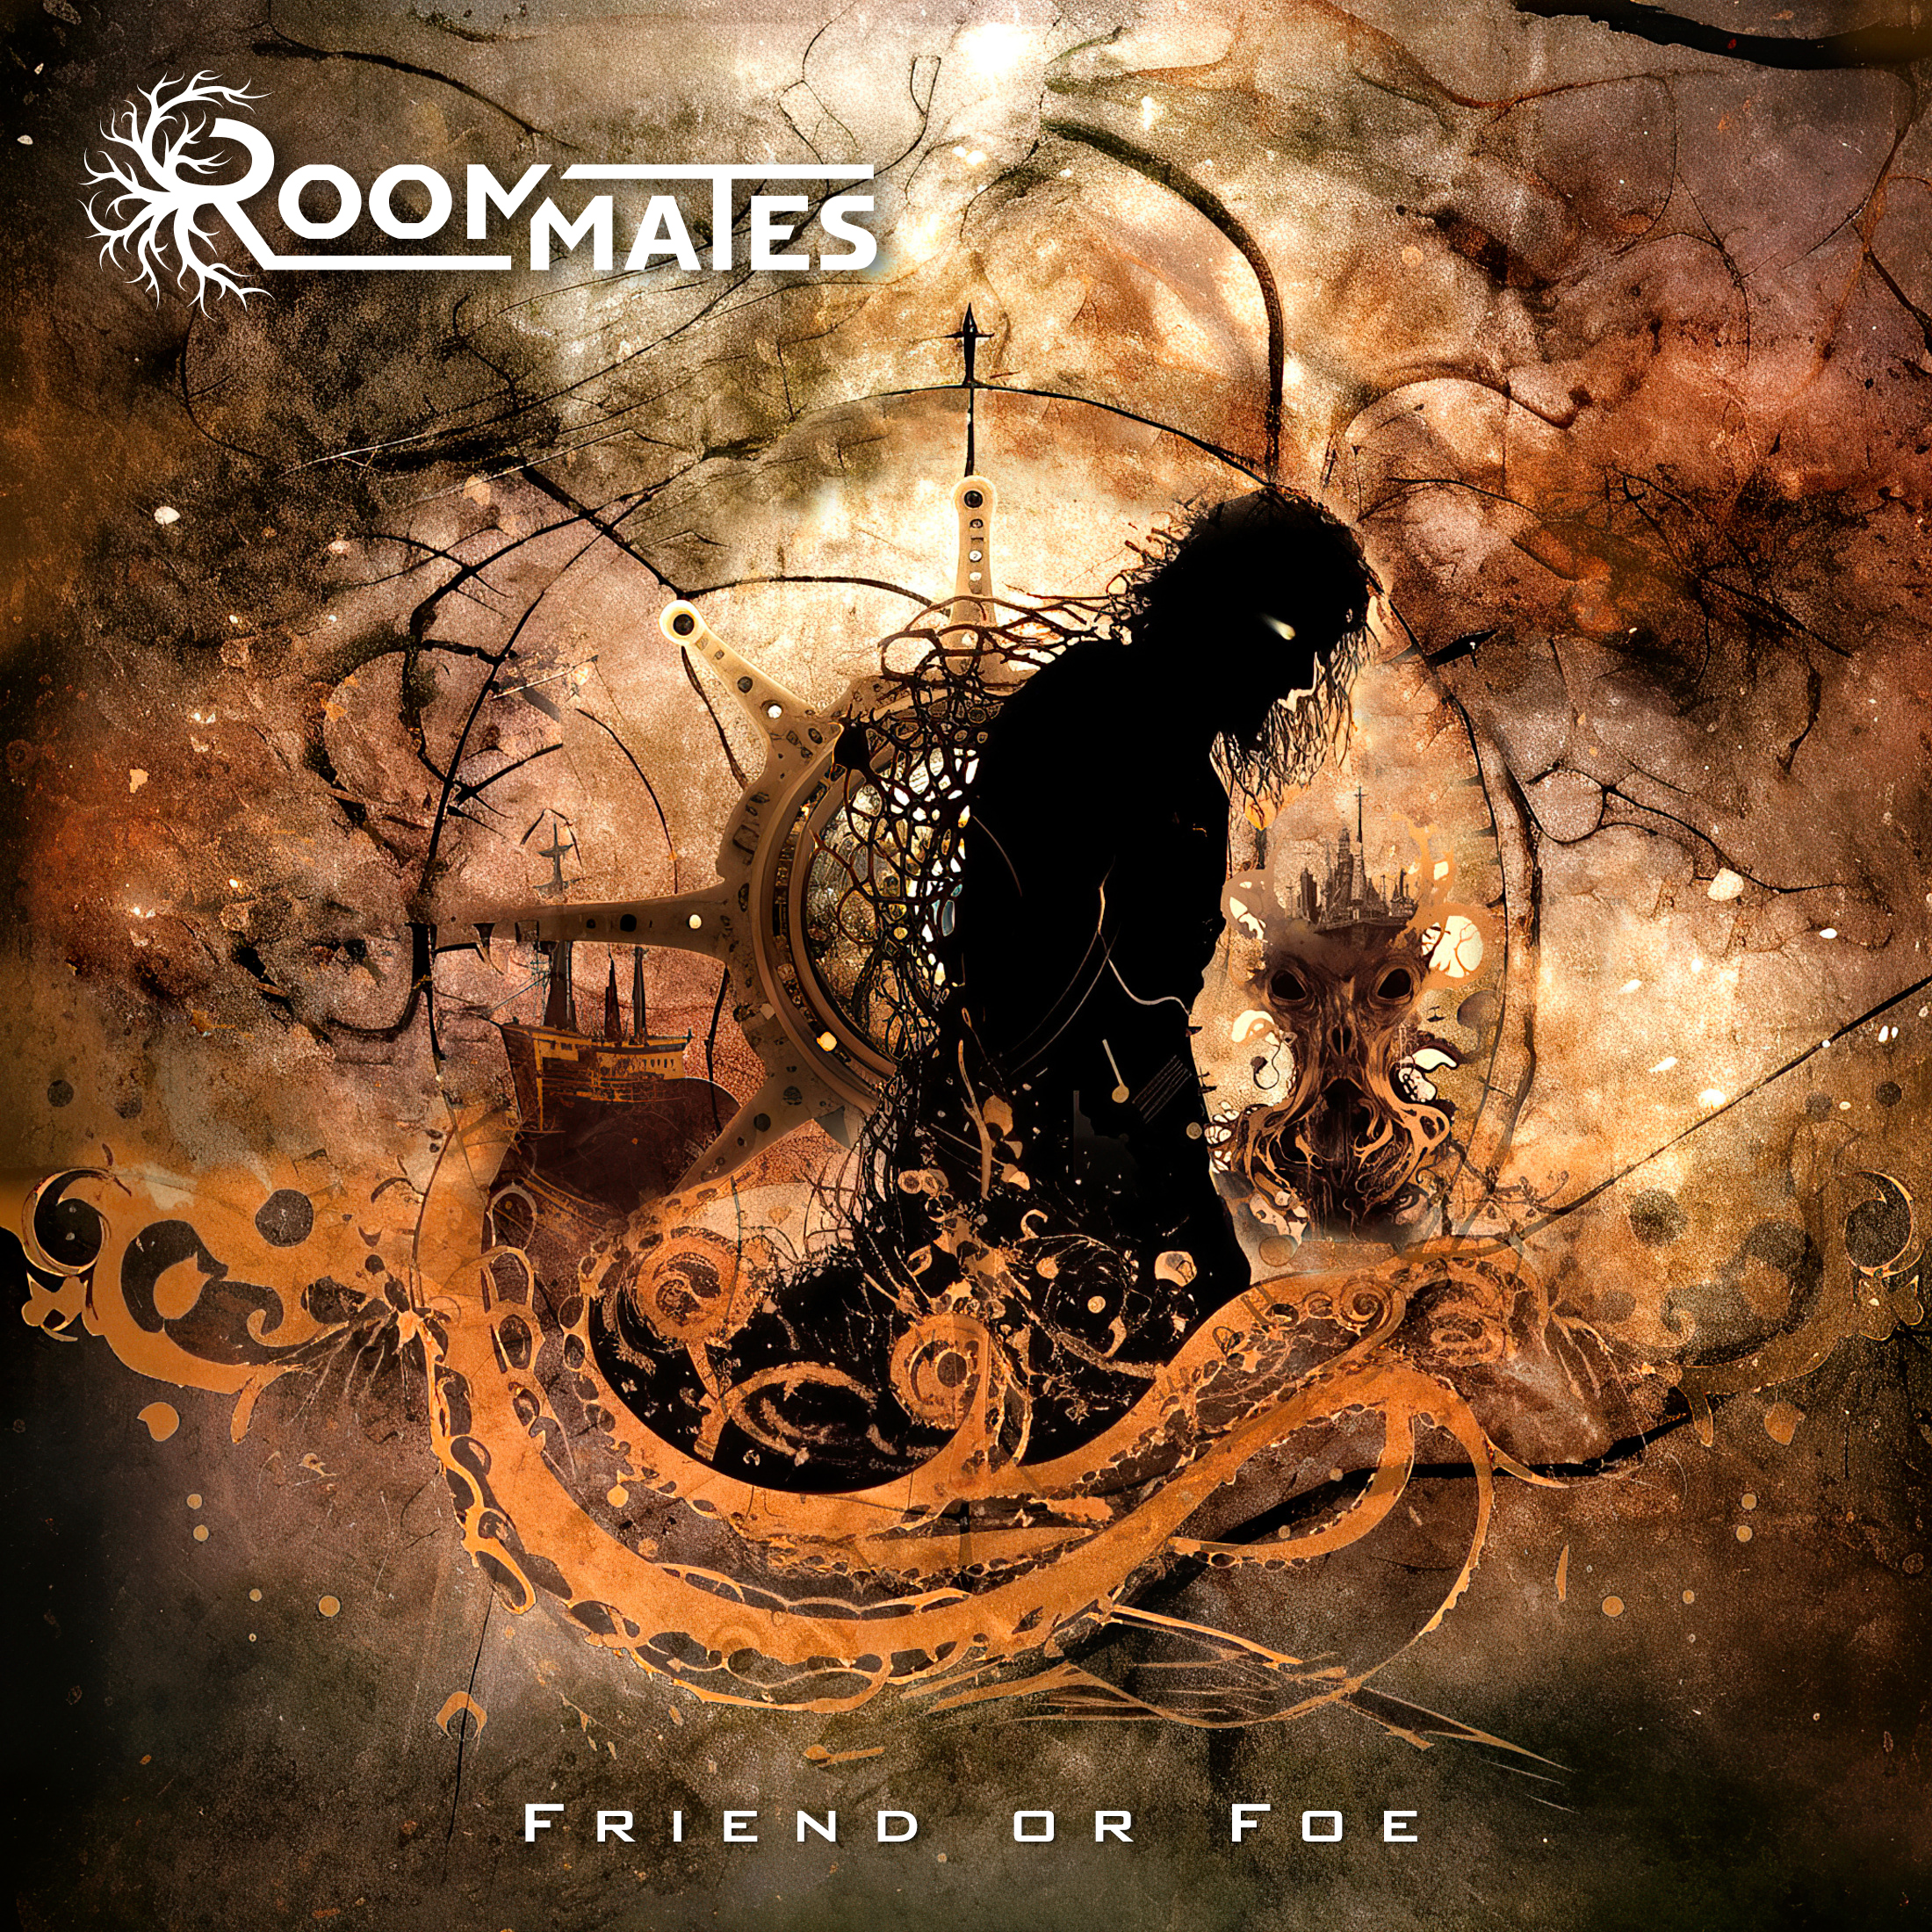 Roommates: Il nuovo singolo “Friend Or Foe” featuring Nick Oliveri (Queens of the Stone Age) e Diego Cavallotti (Lacuna Coil)